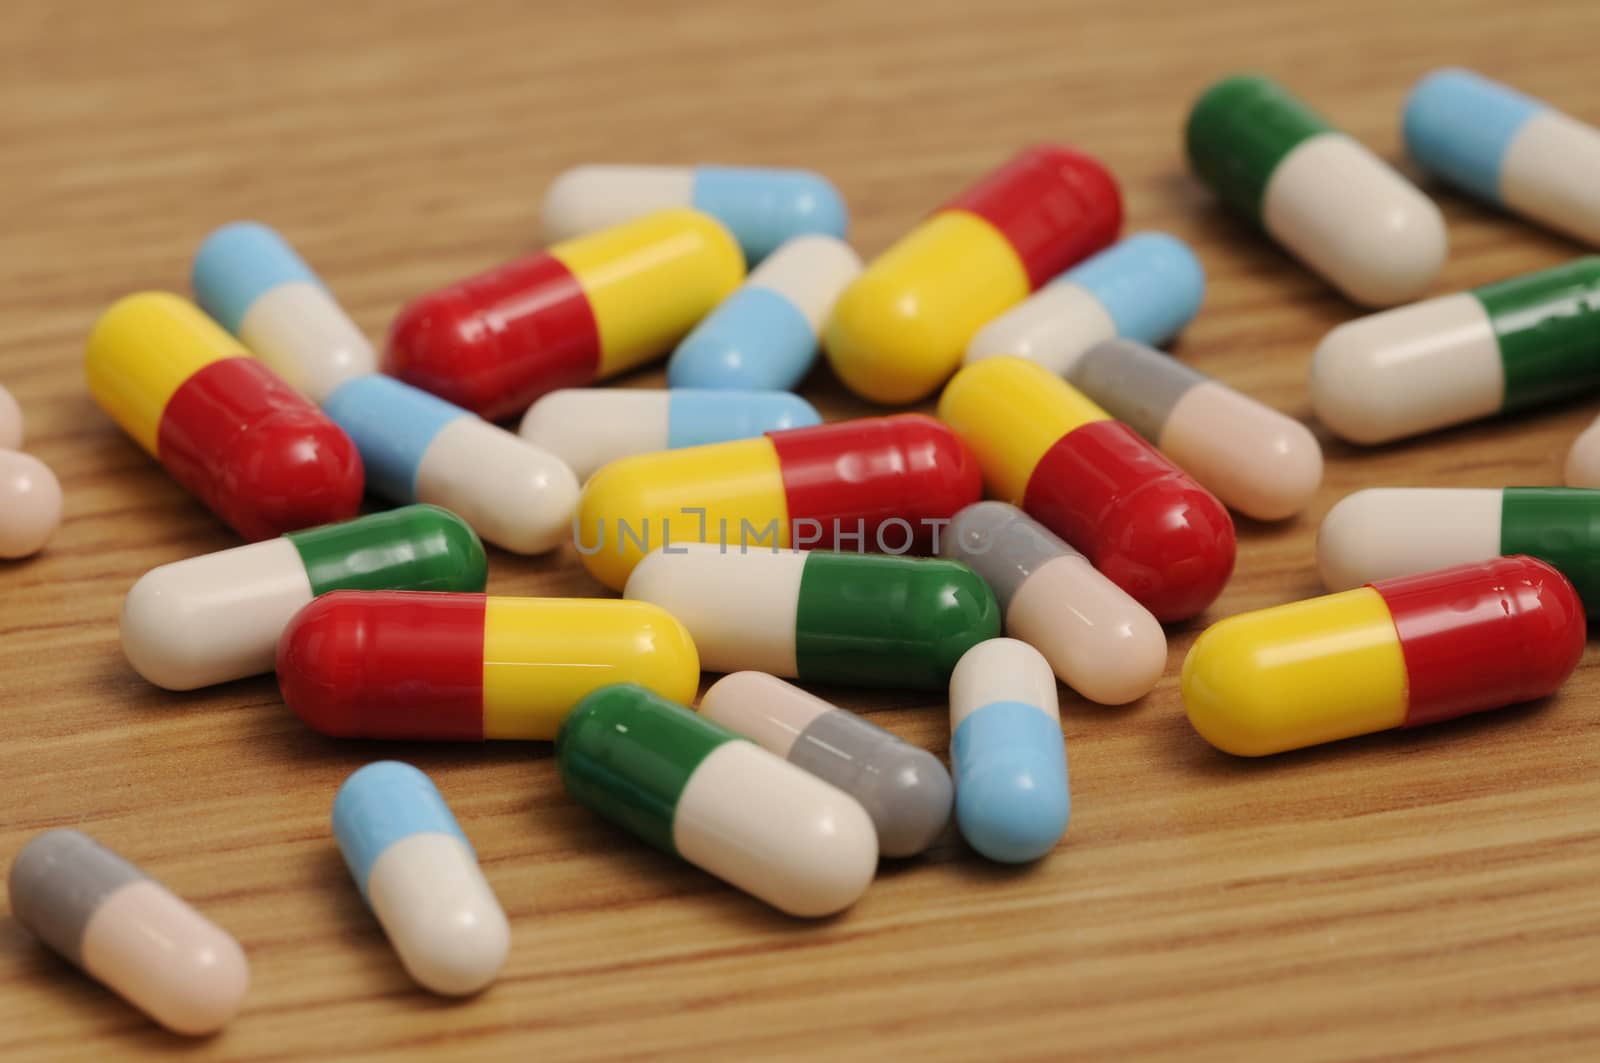 Capsules and Pills by rodrigobellizzi